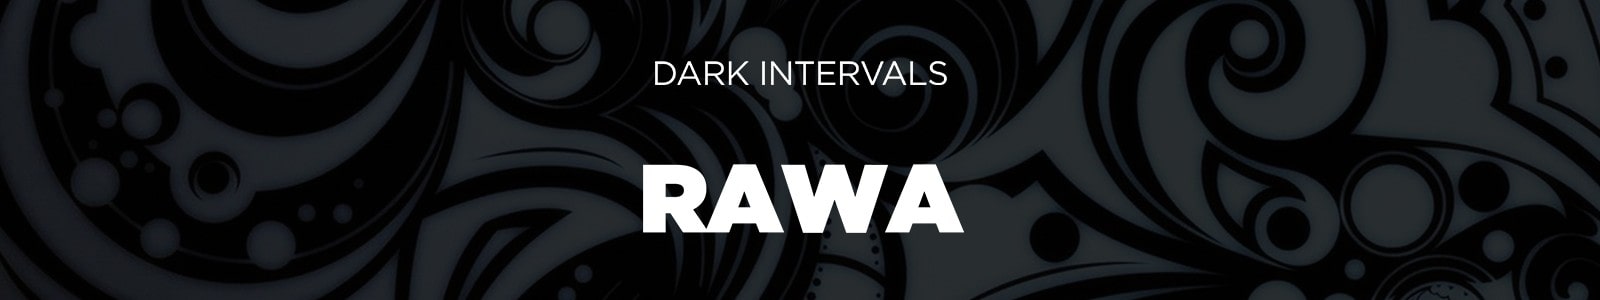 Dark Intervals RAWA